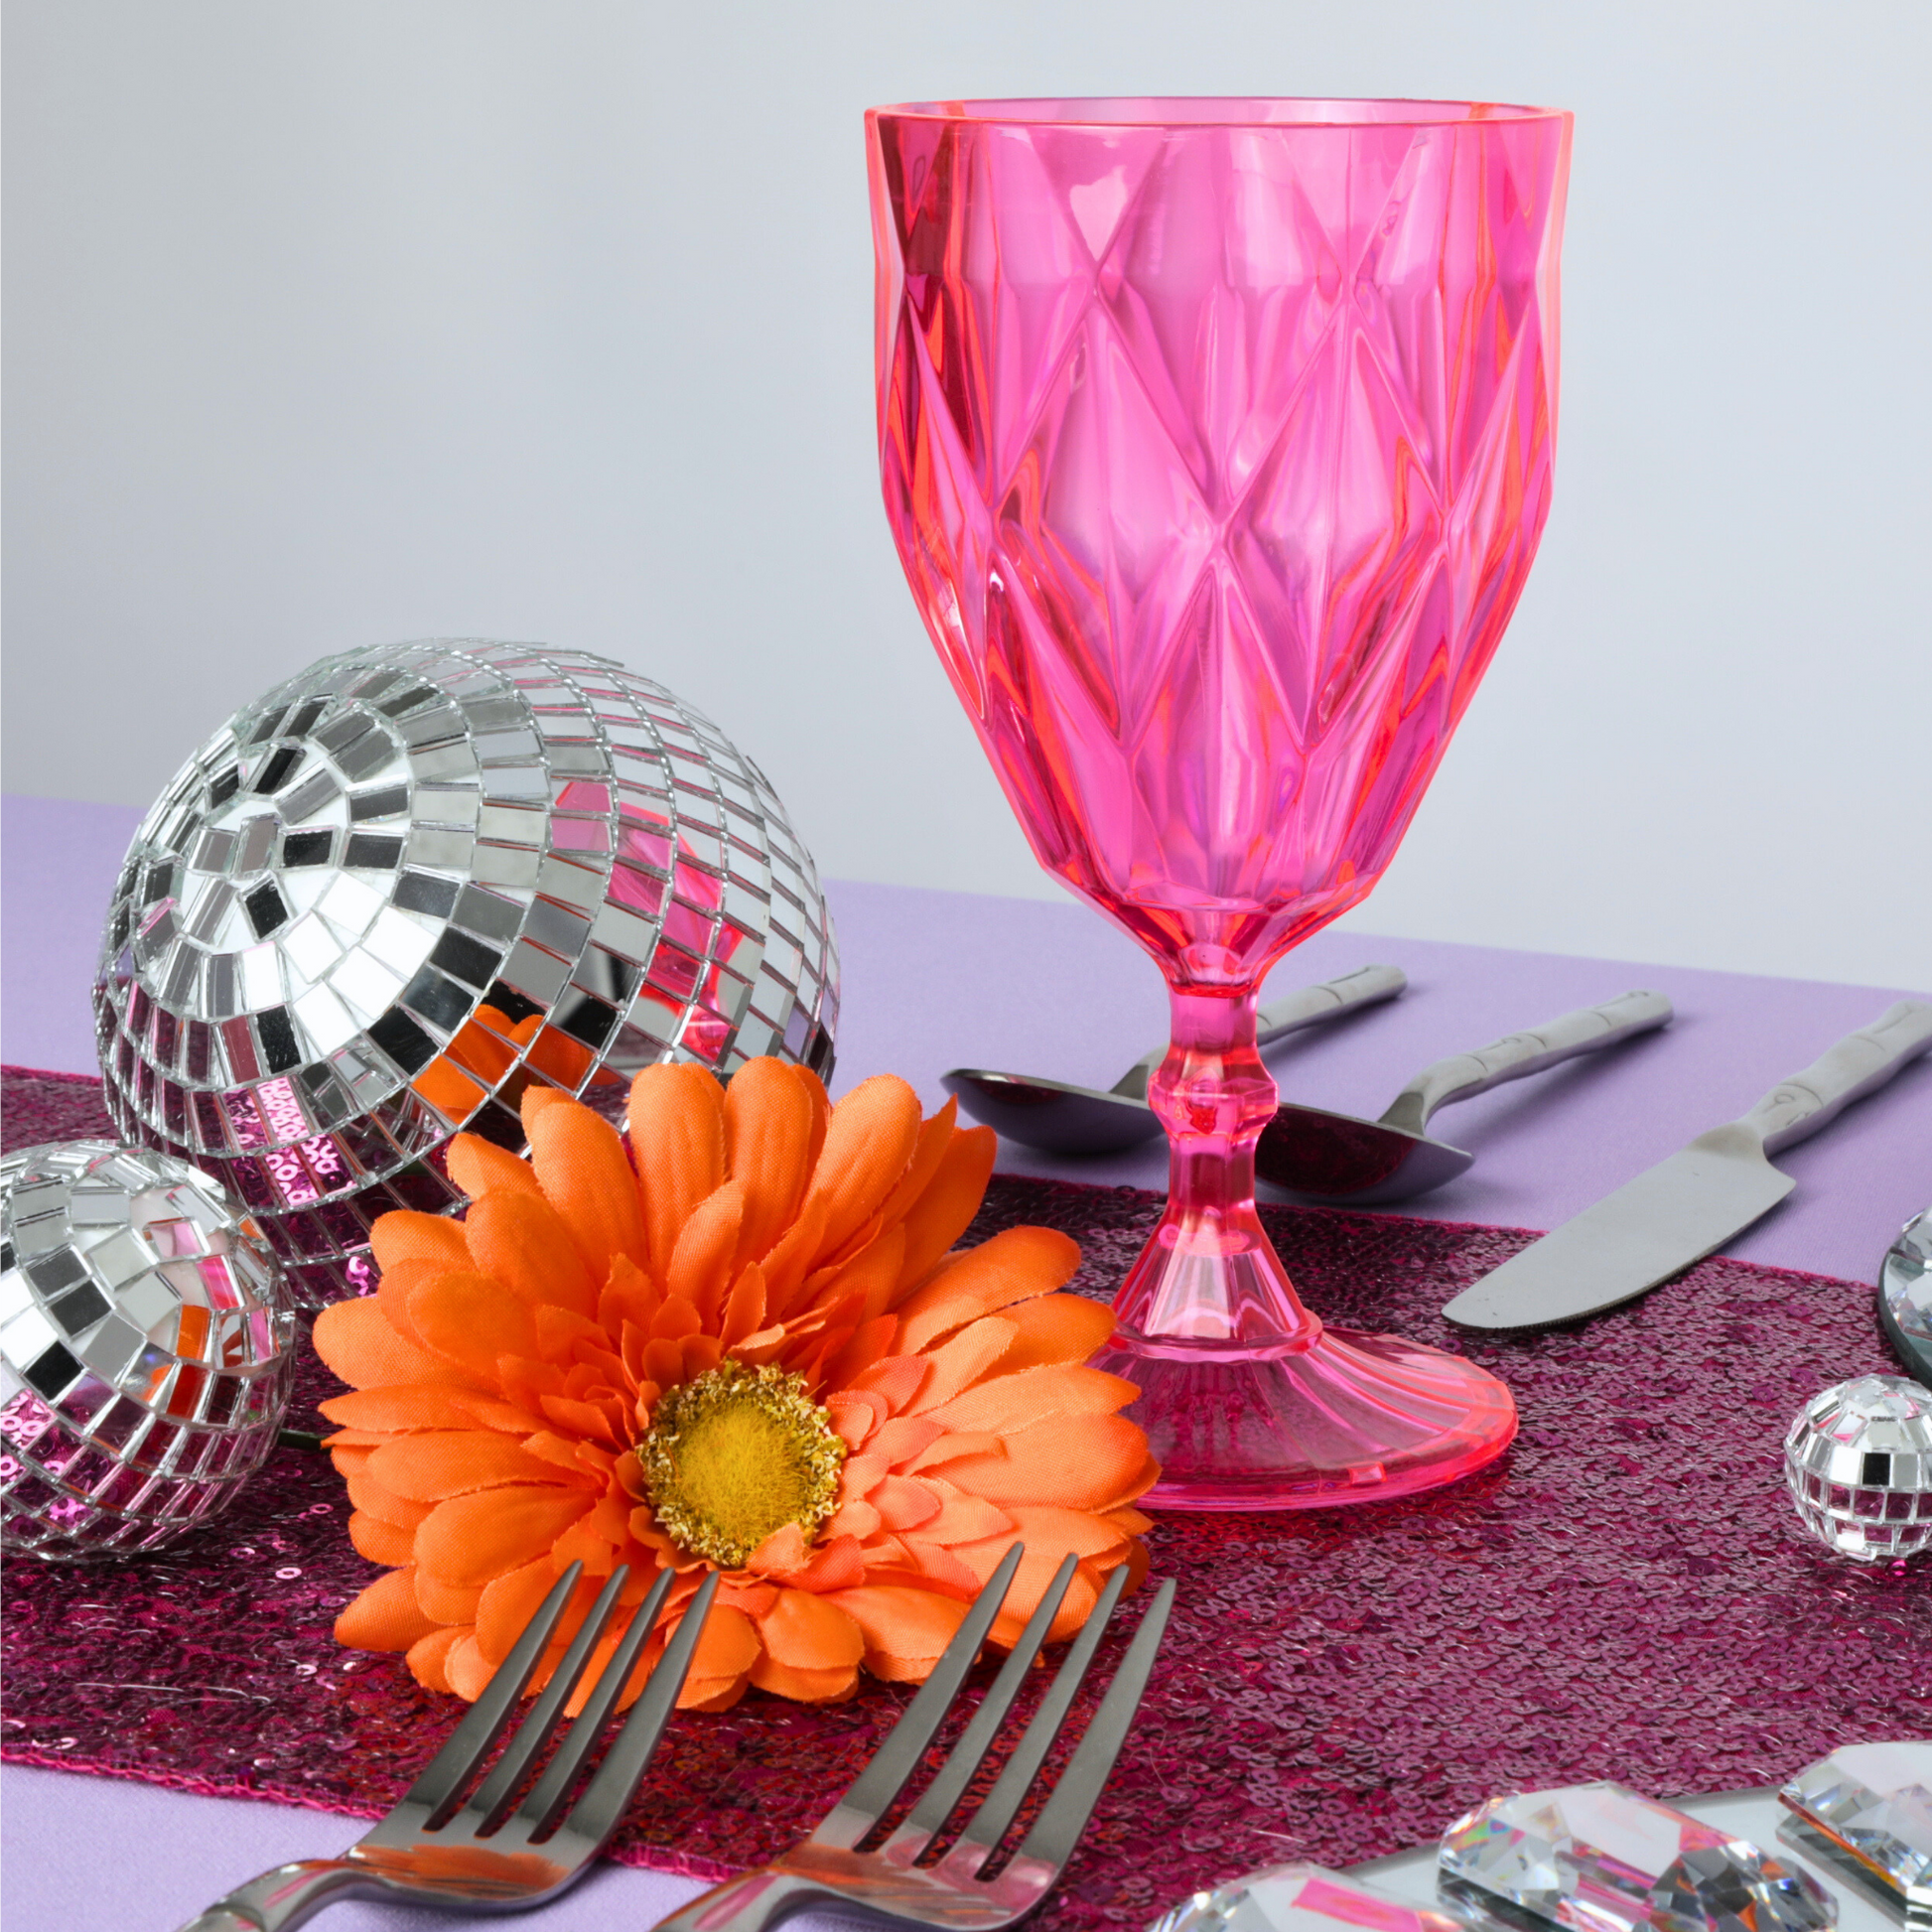 Pink Vintage Acrylic Goblets (6 pcs/pk)